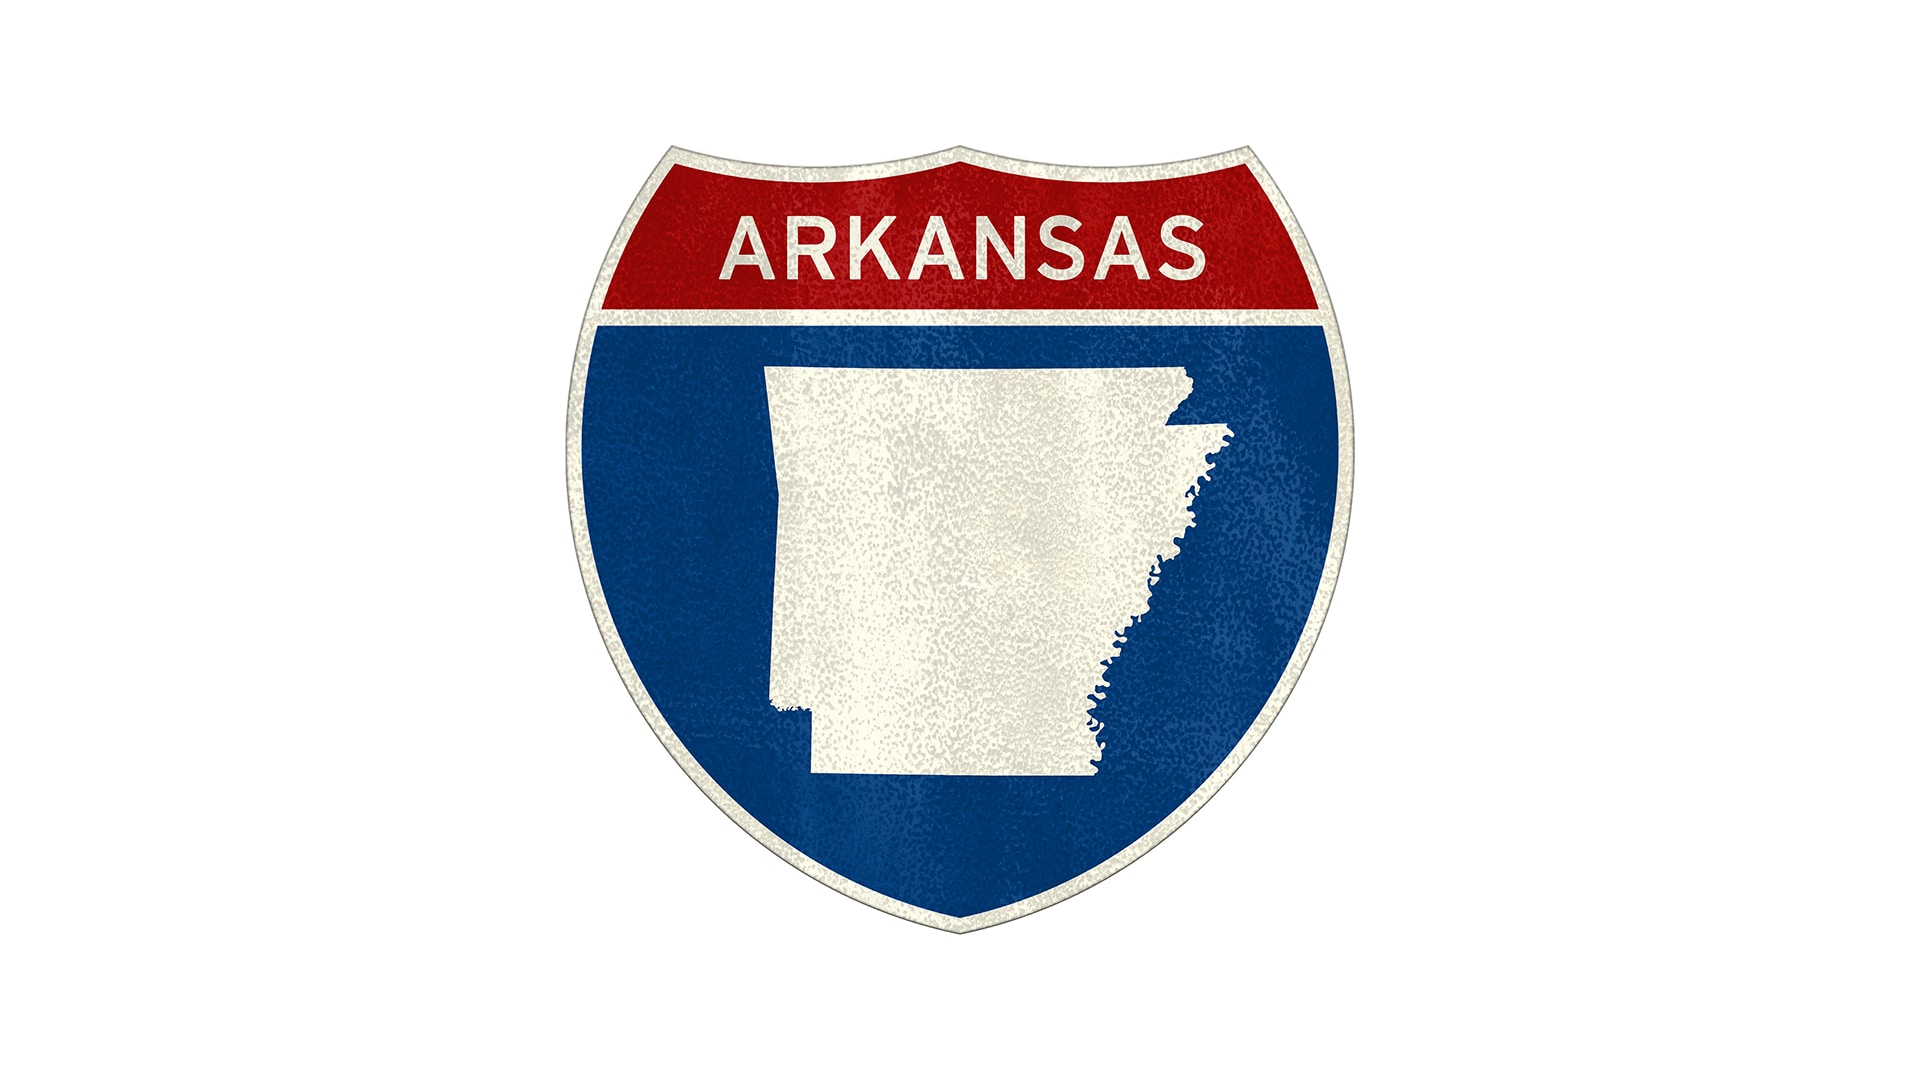 Arkansas state roadside sign